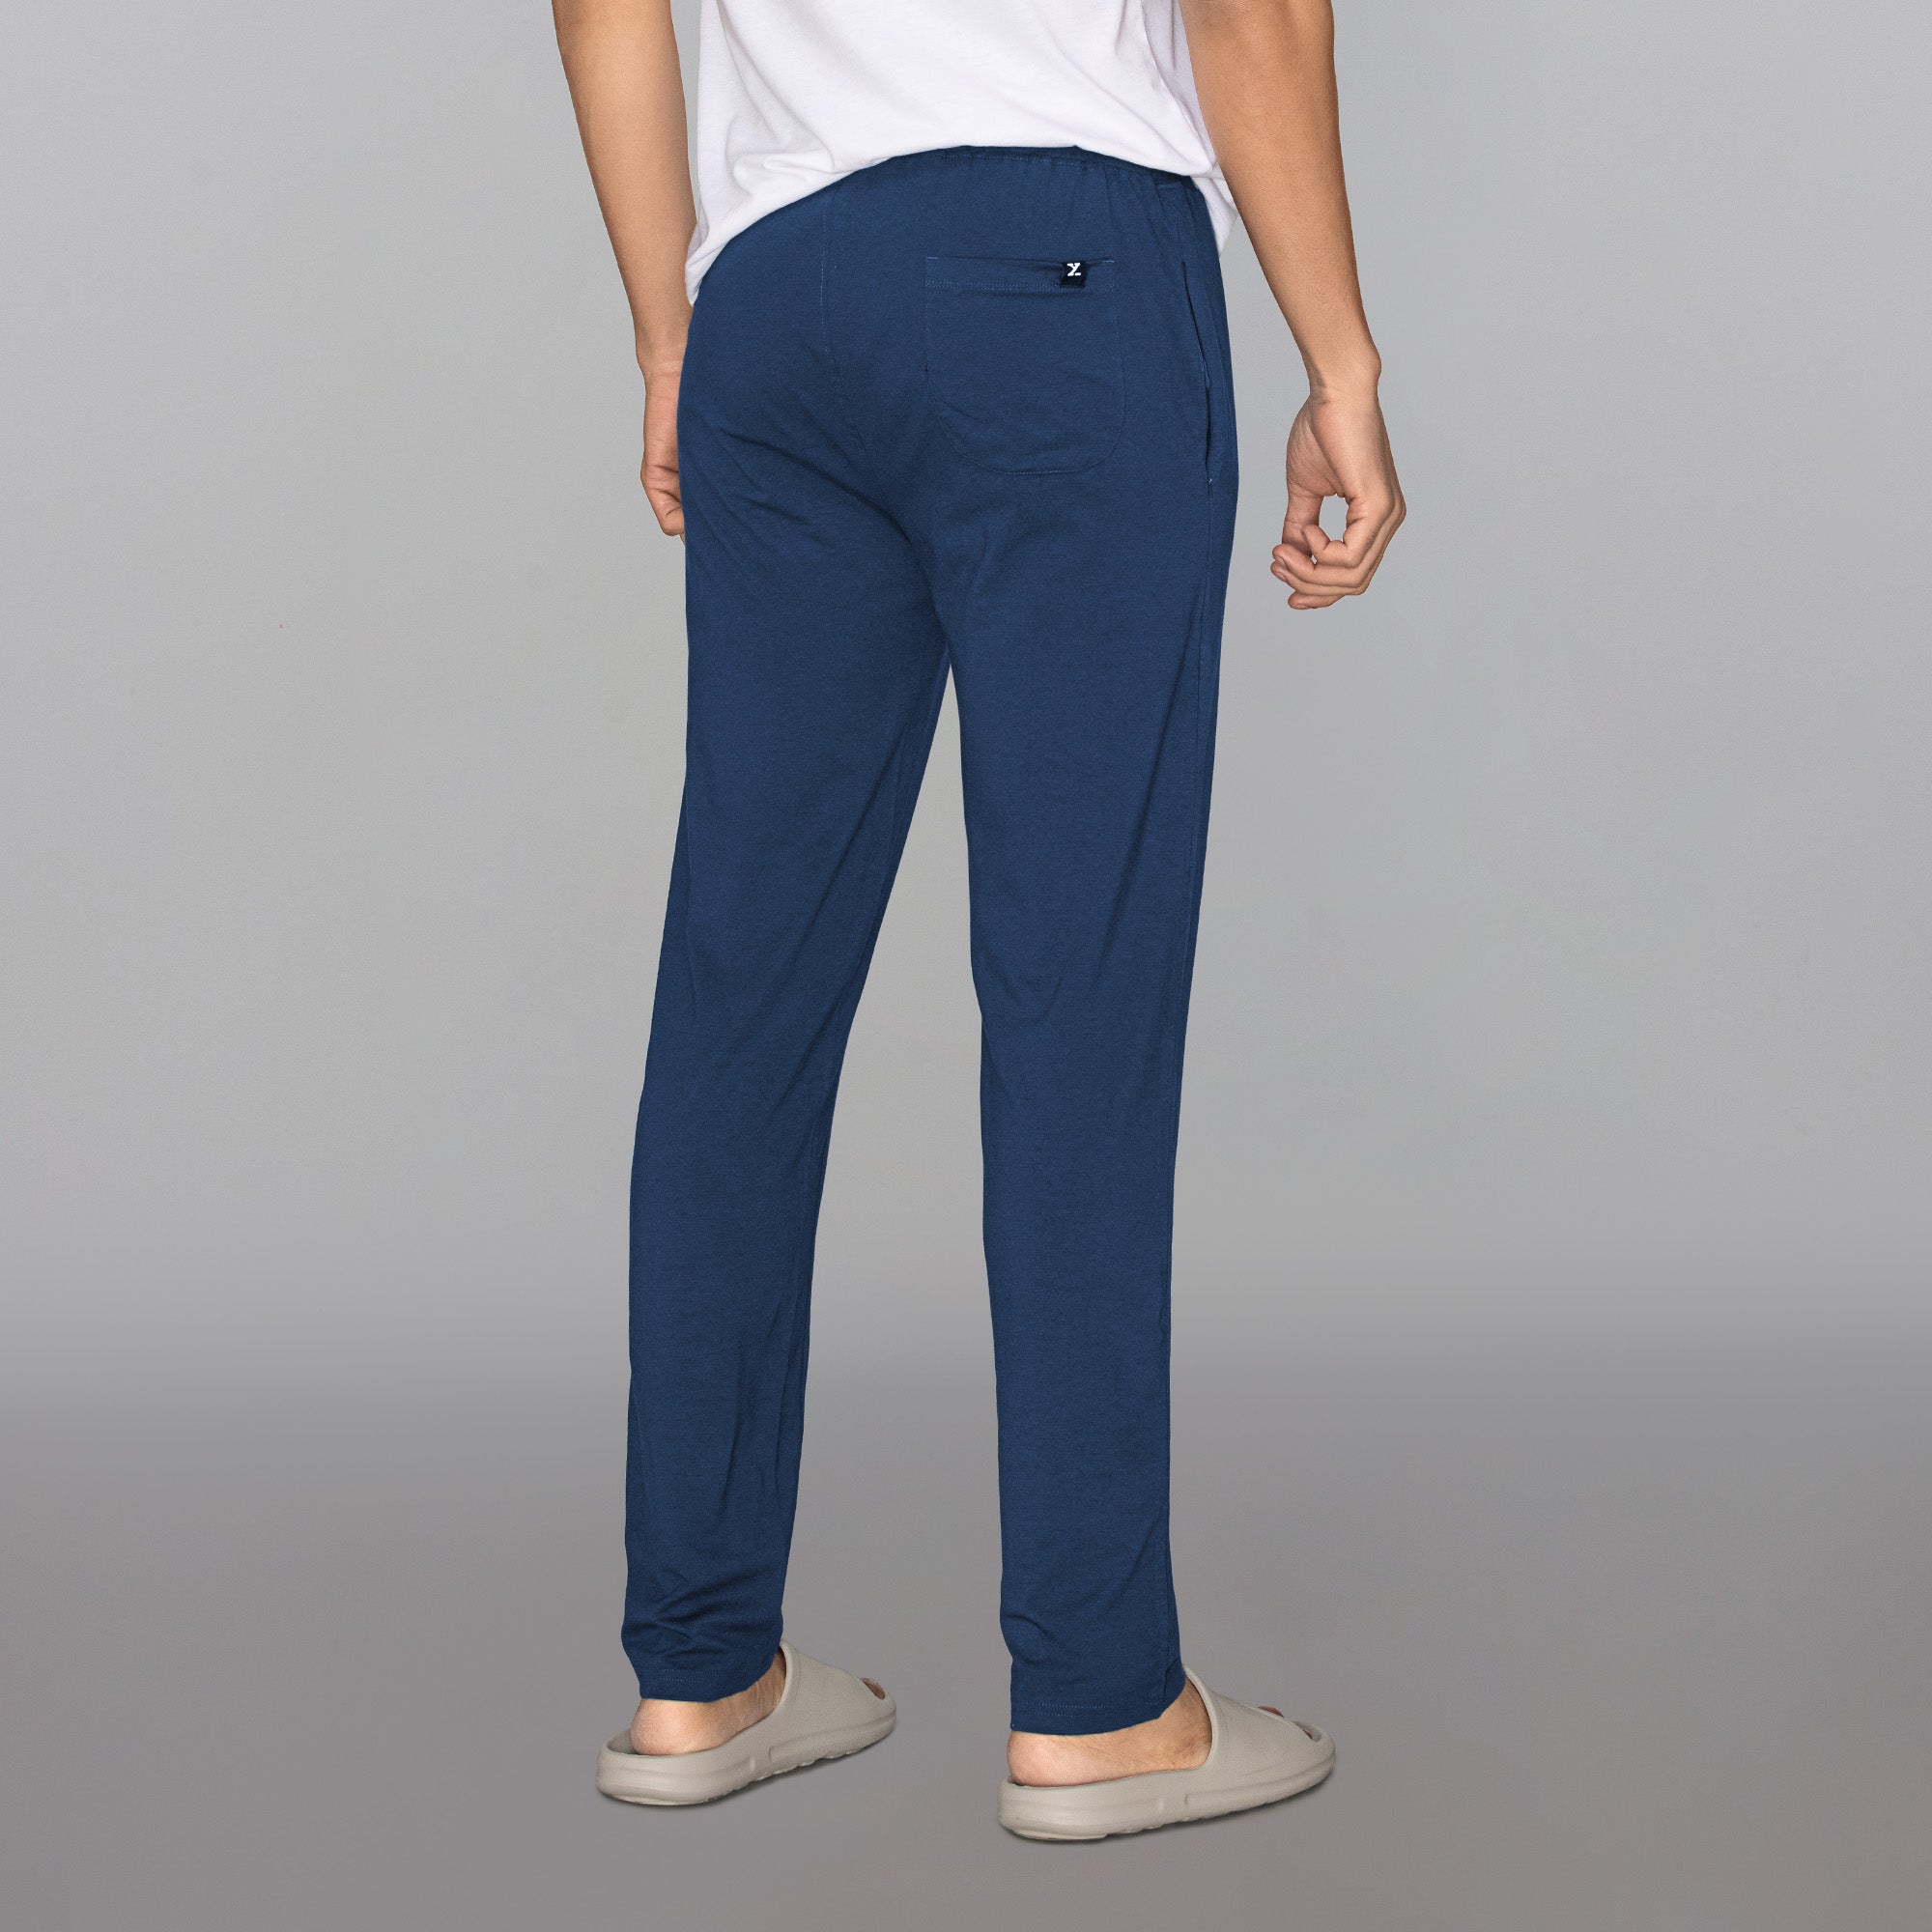 Unisex Adult 100% Cotton Faux Denim Jeans Lounge Pants With Drawstring  Waist - Large - Walmart.com